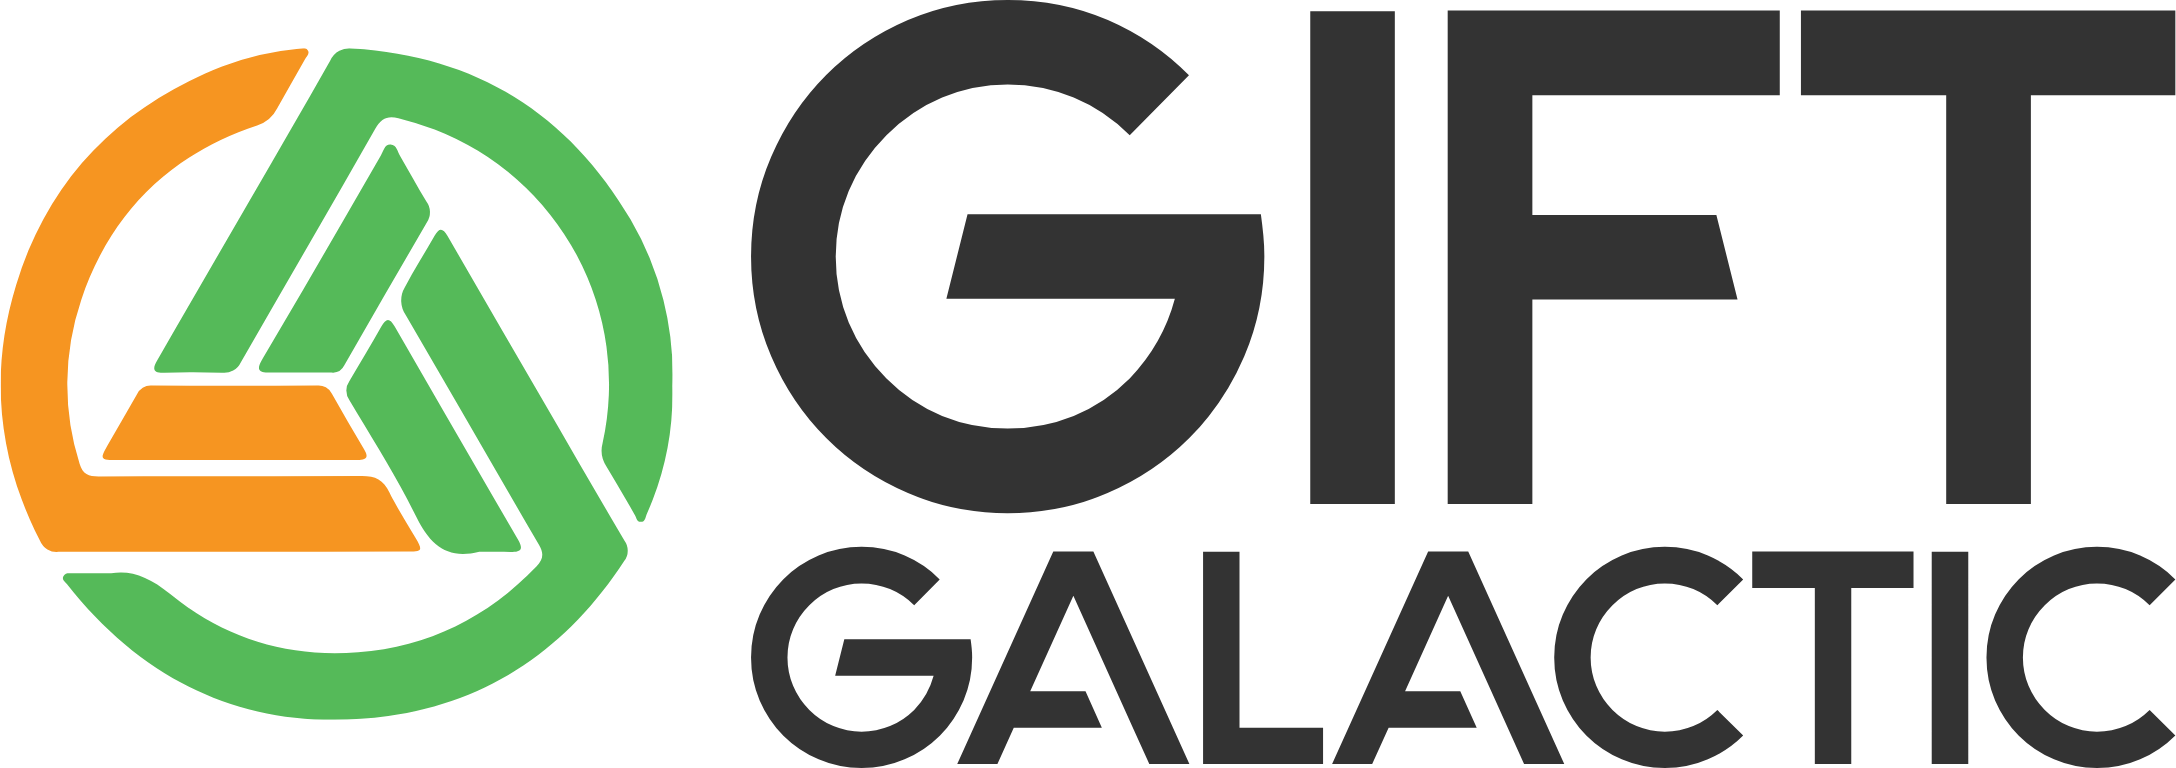 Gift Galactic Logo, giftgalactic.net